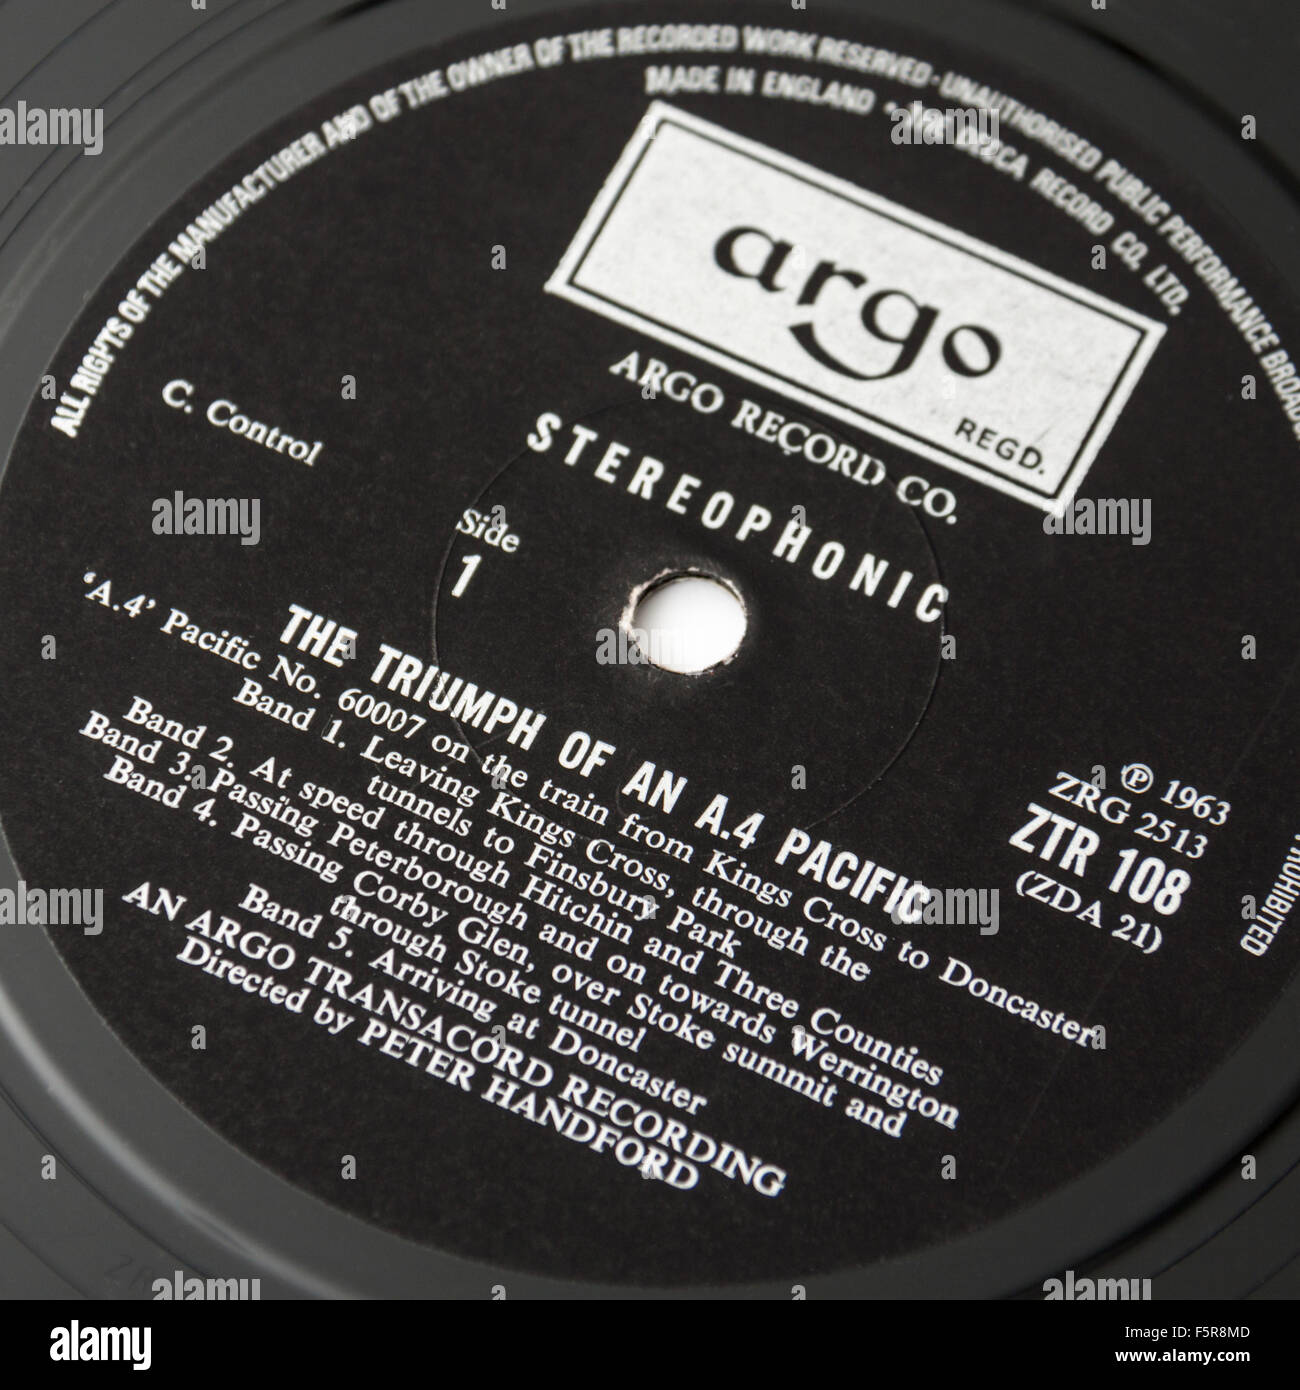 ARGO TRANSACORD Aufnahme / LP (ZTR108) mit der rekordverdächtigen Reise 1959 des Pazifiks keine 60007 Sir Nigel Gresley a. 4. Stockfoto